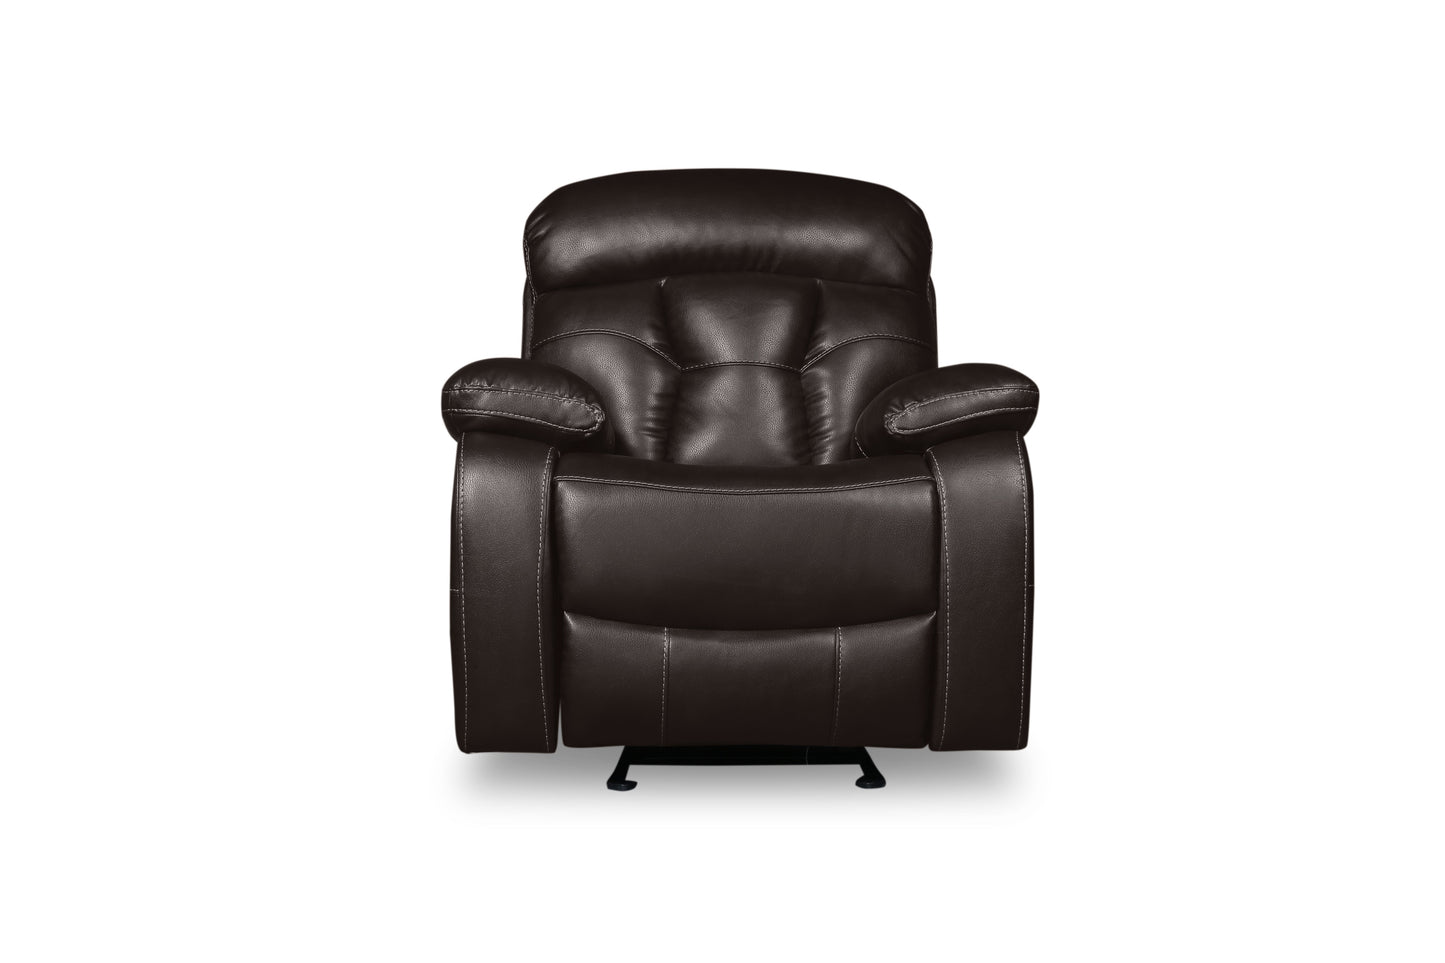 SH3216*3PW 3pc Set: Sofa, Love, Chair (Power)